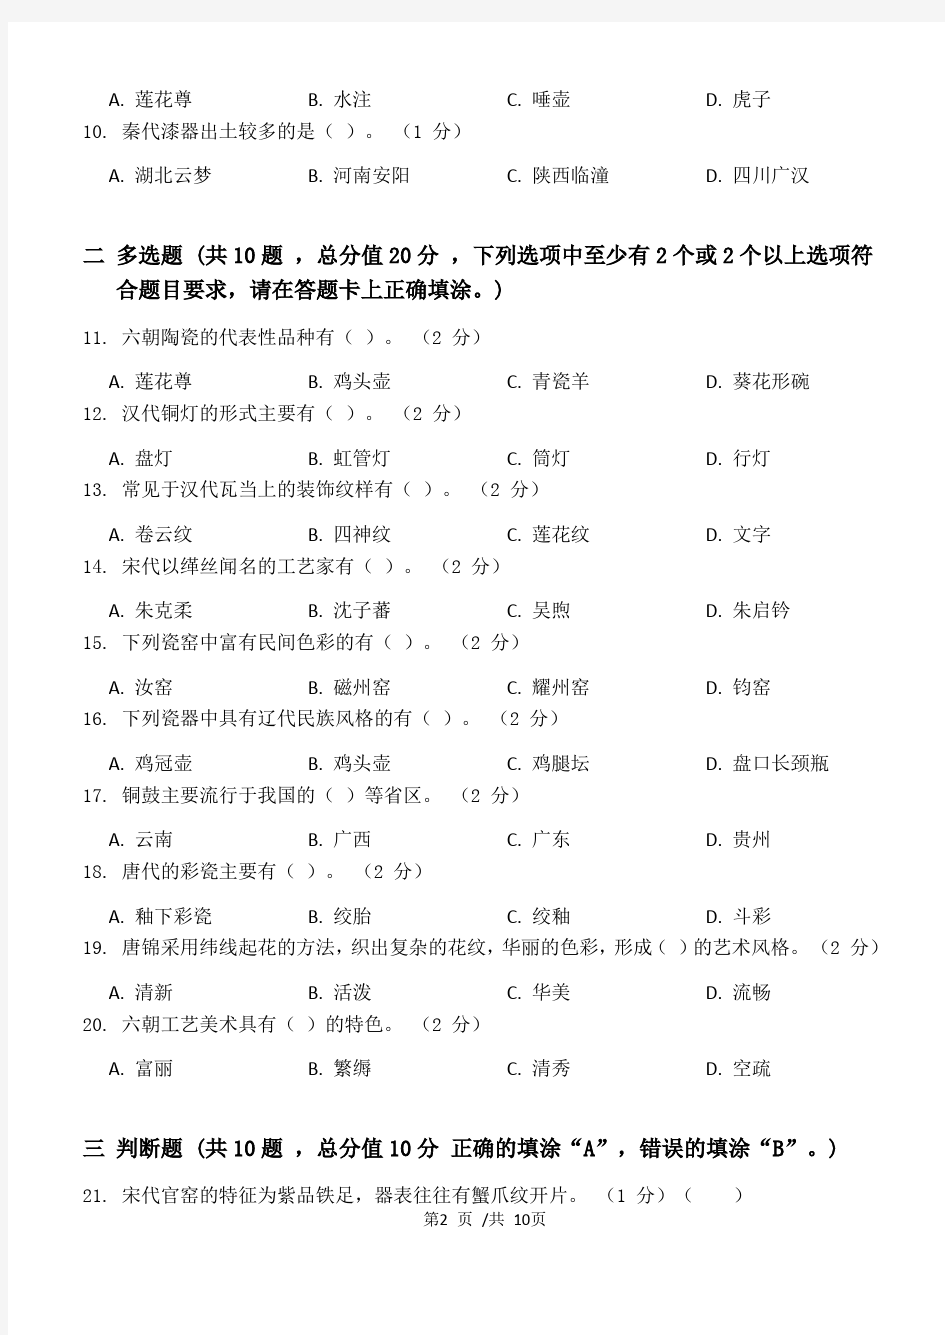 中国工艺美术史第2阶段练习题江大考试题库及答案一科共有三个阶段,这是其中一个阶段。答案在最